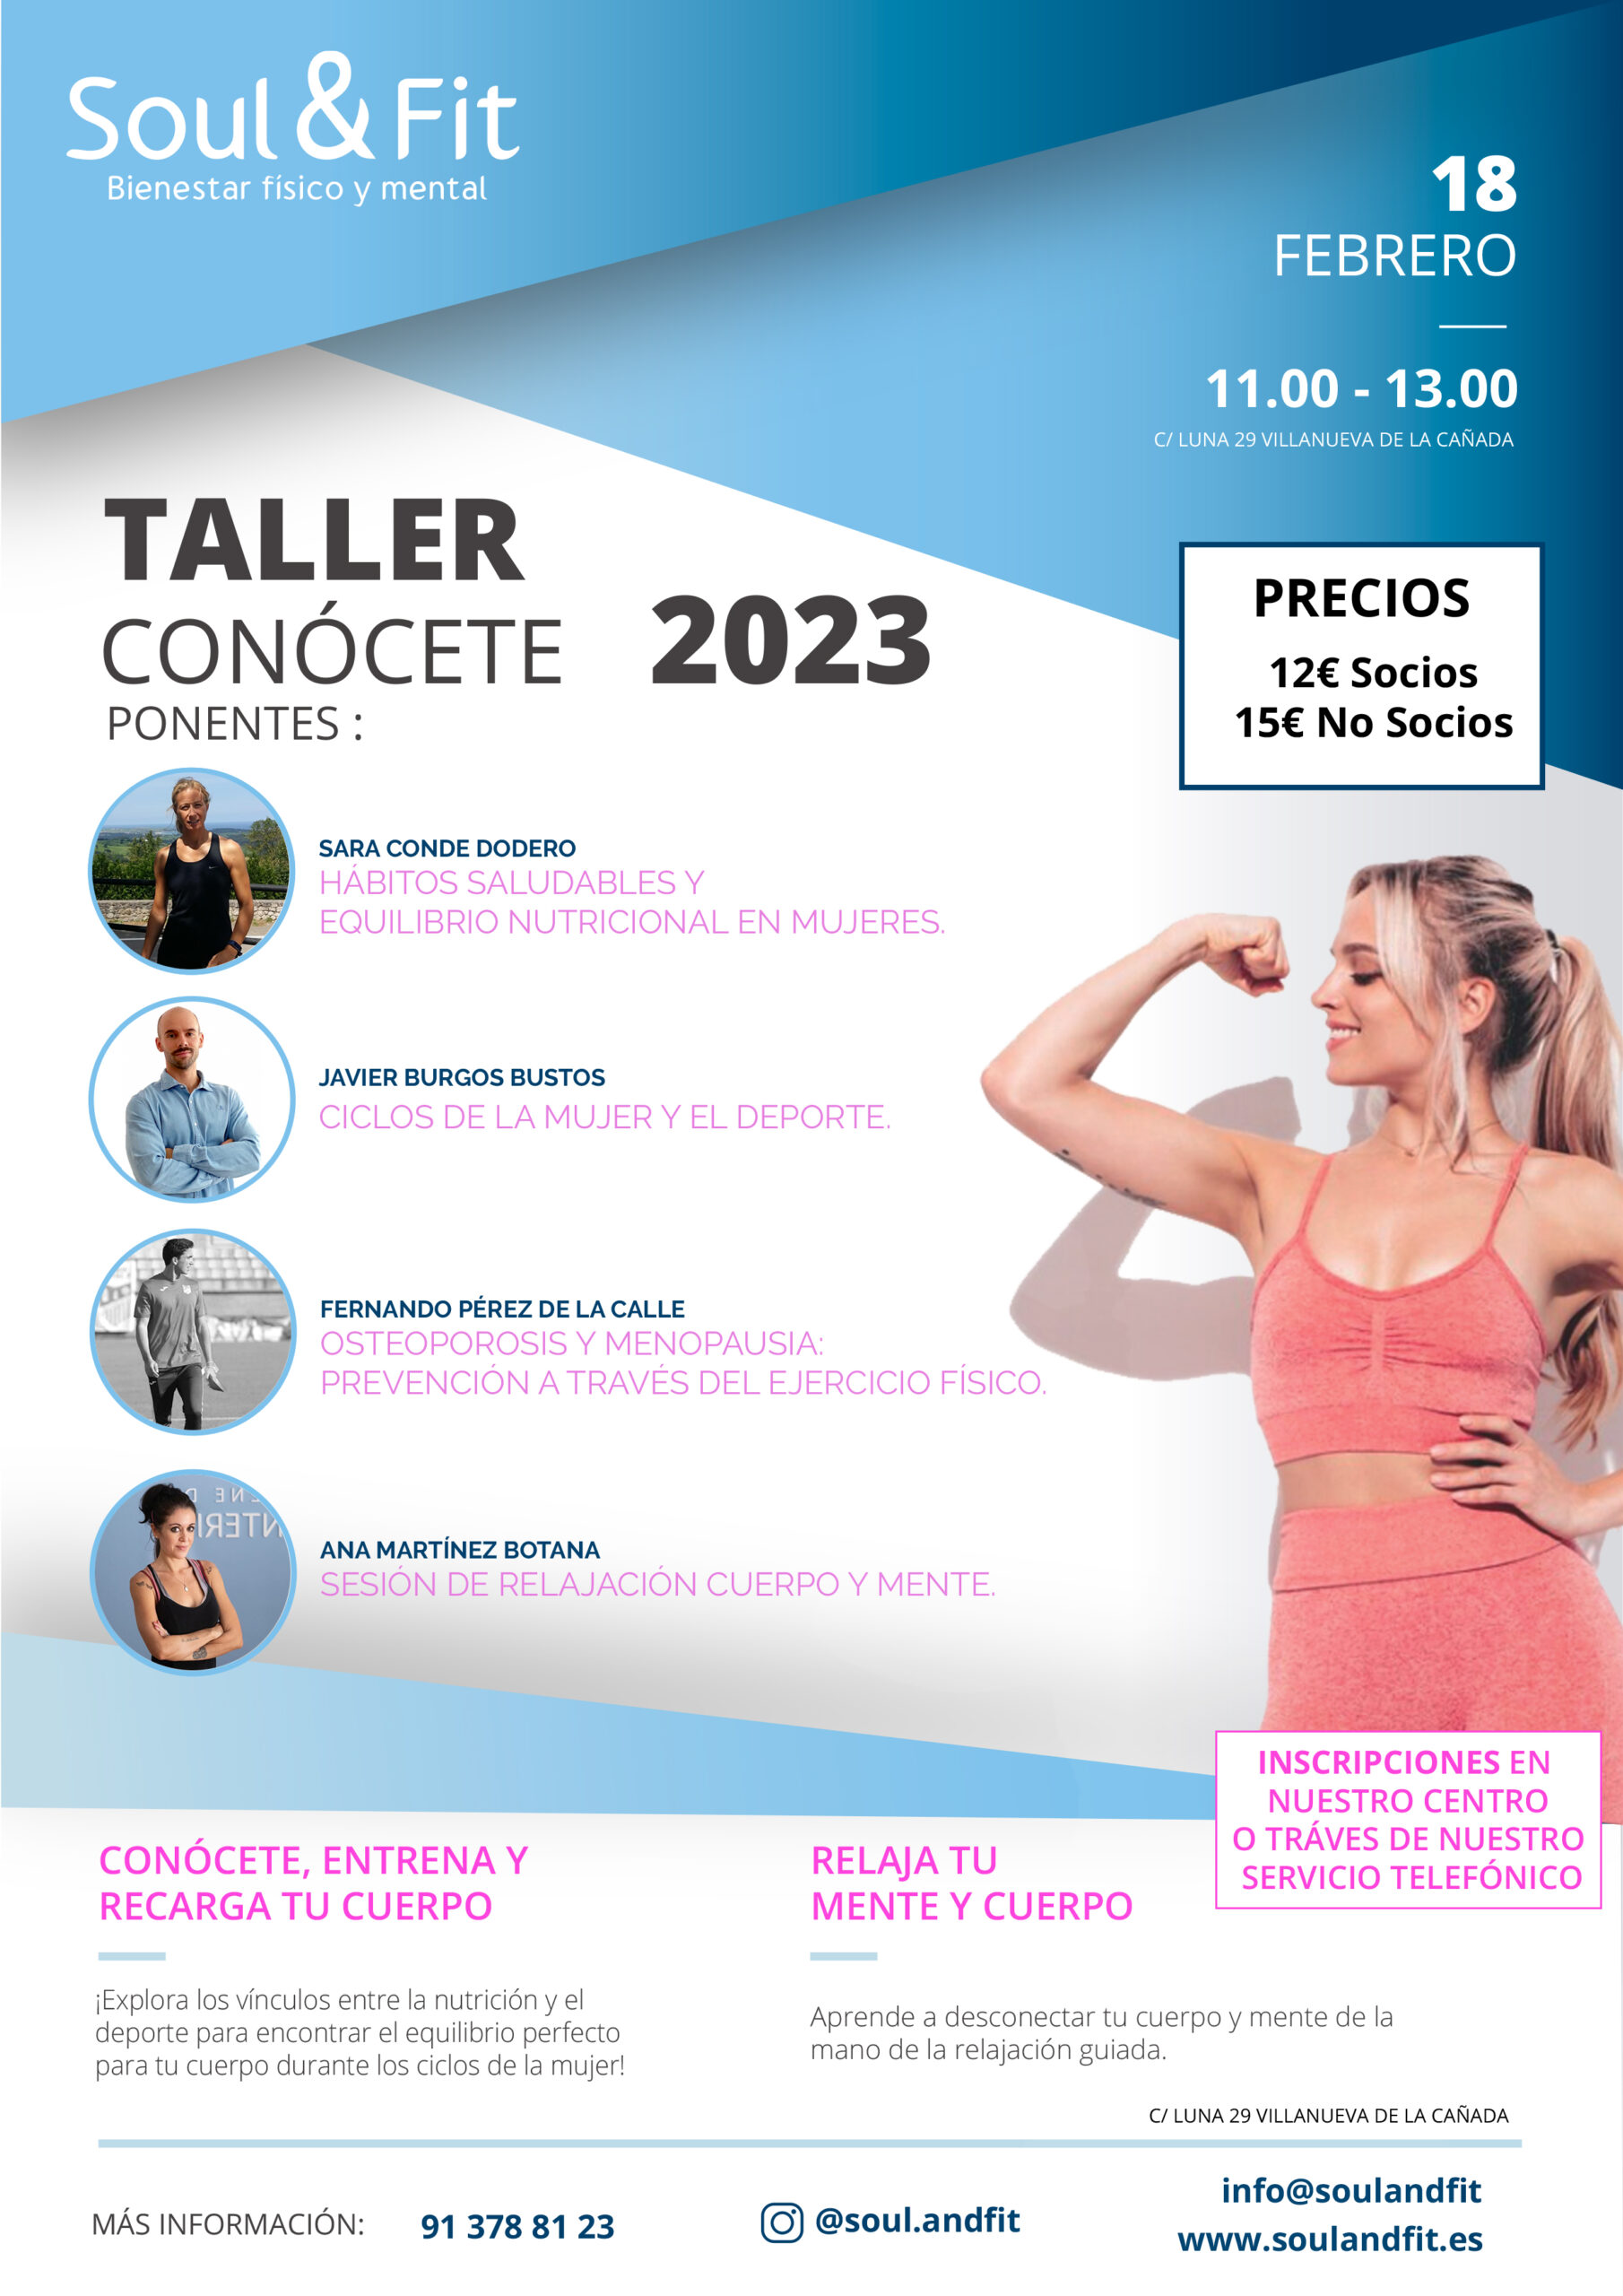 Taller Conócete 2023